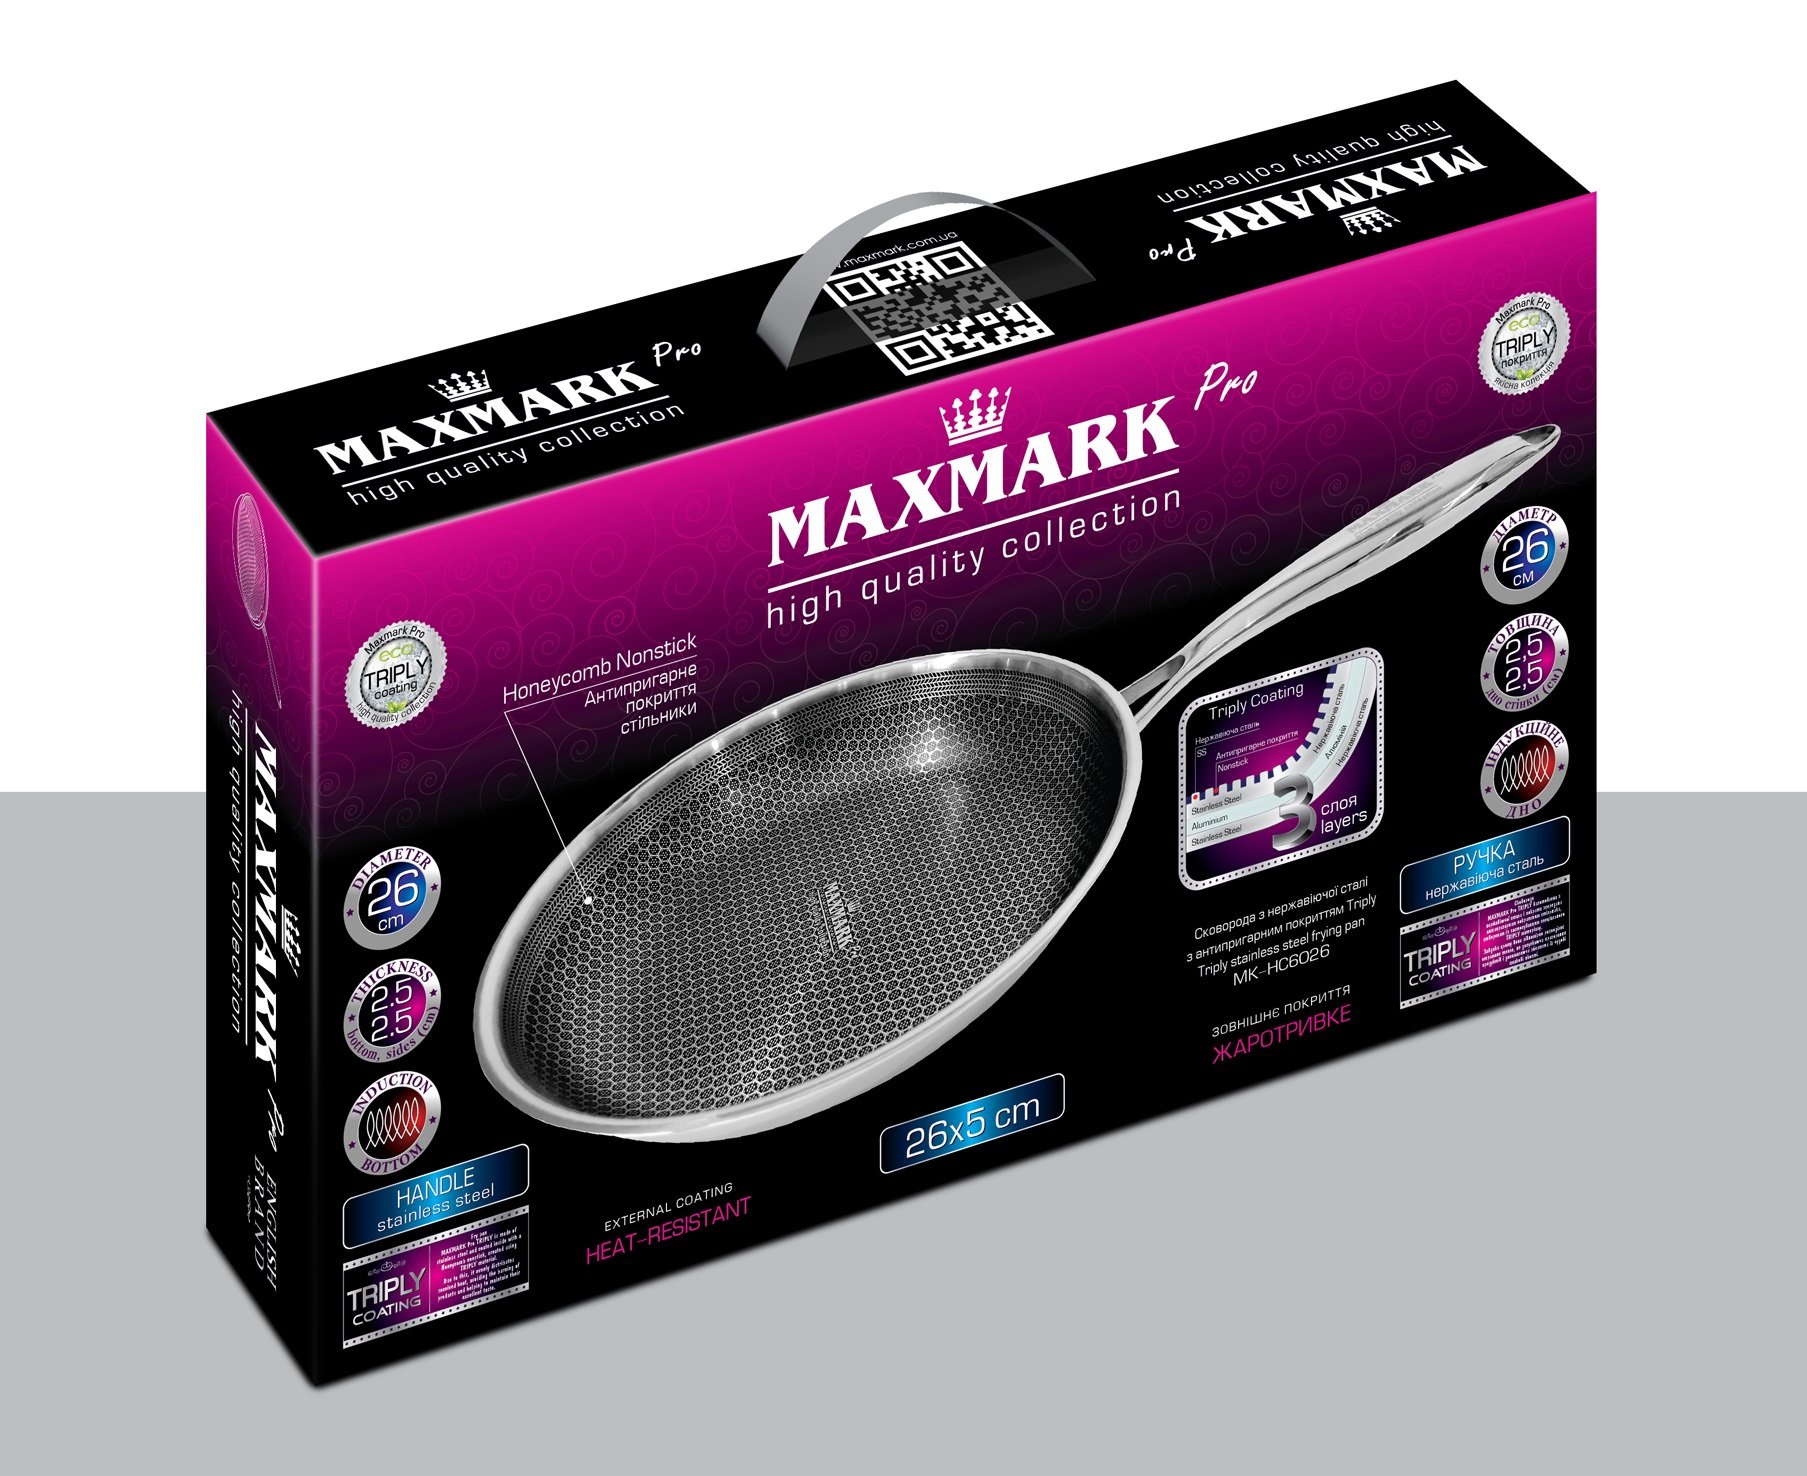 Сковородка Maxmark, 26 см, серебристая (MK-HC6026) - фото 4